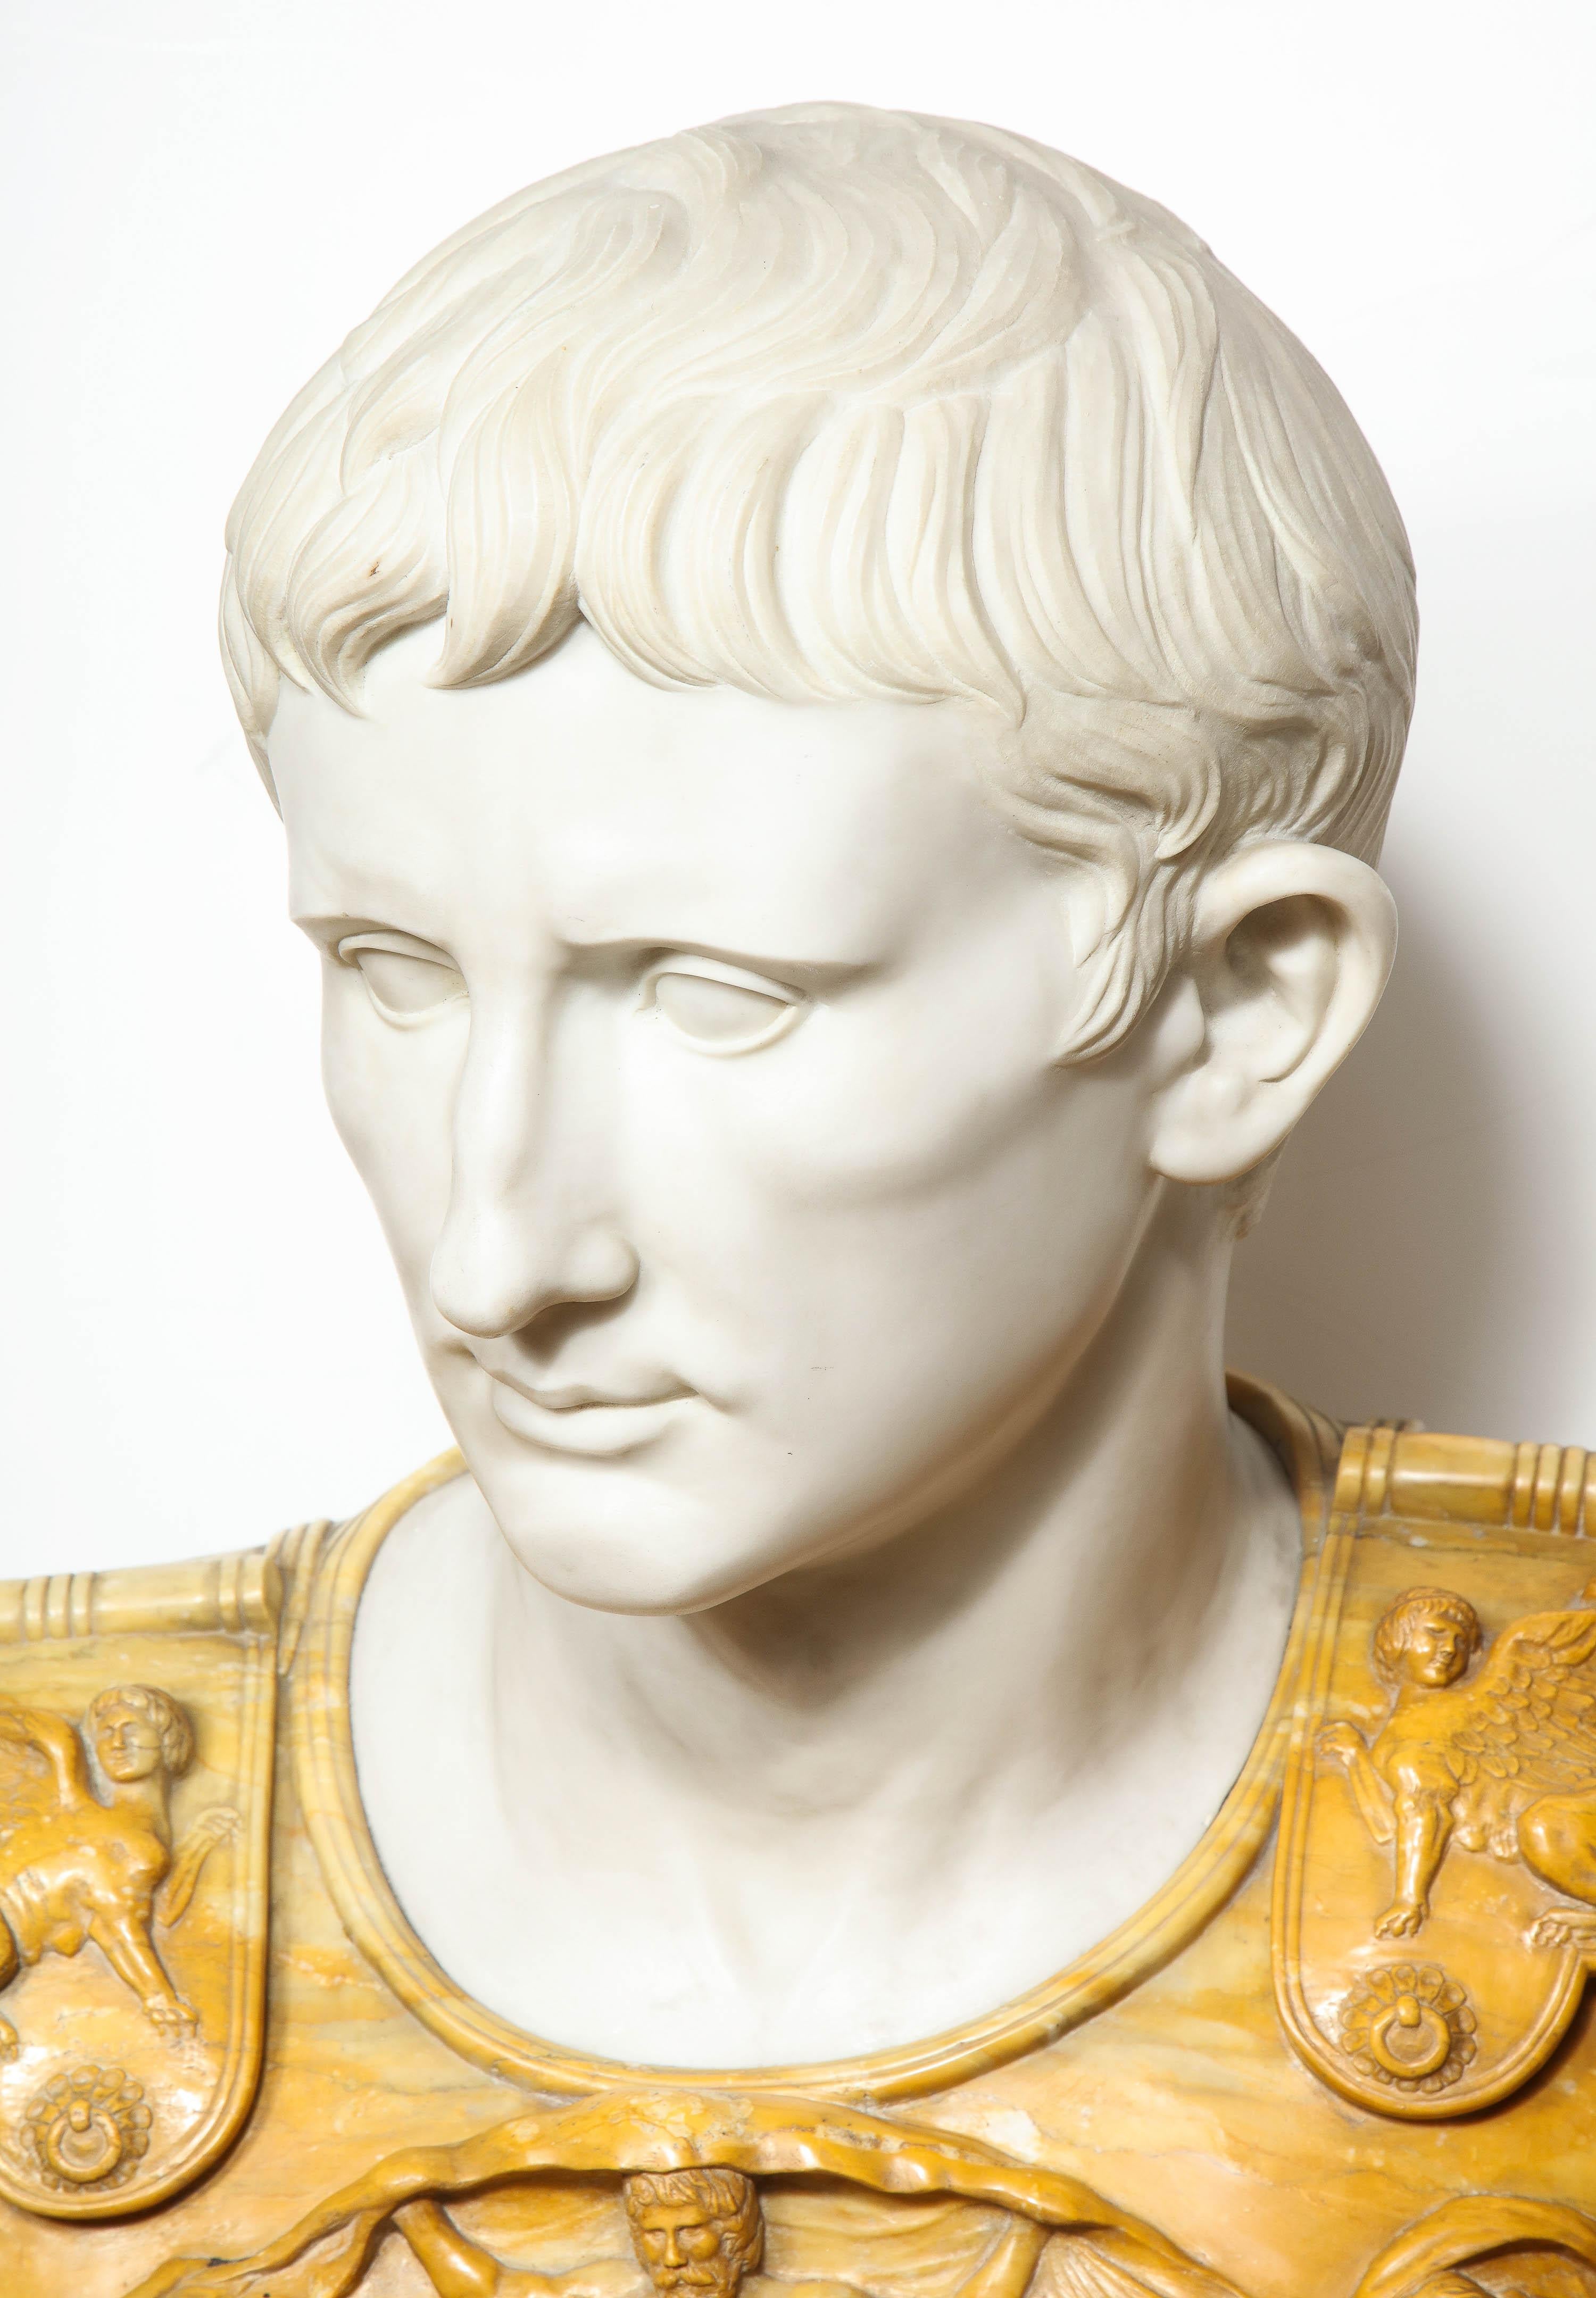 bust of emperor augustus